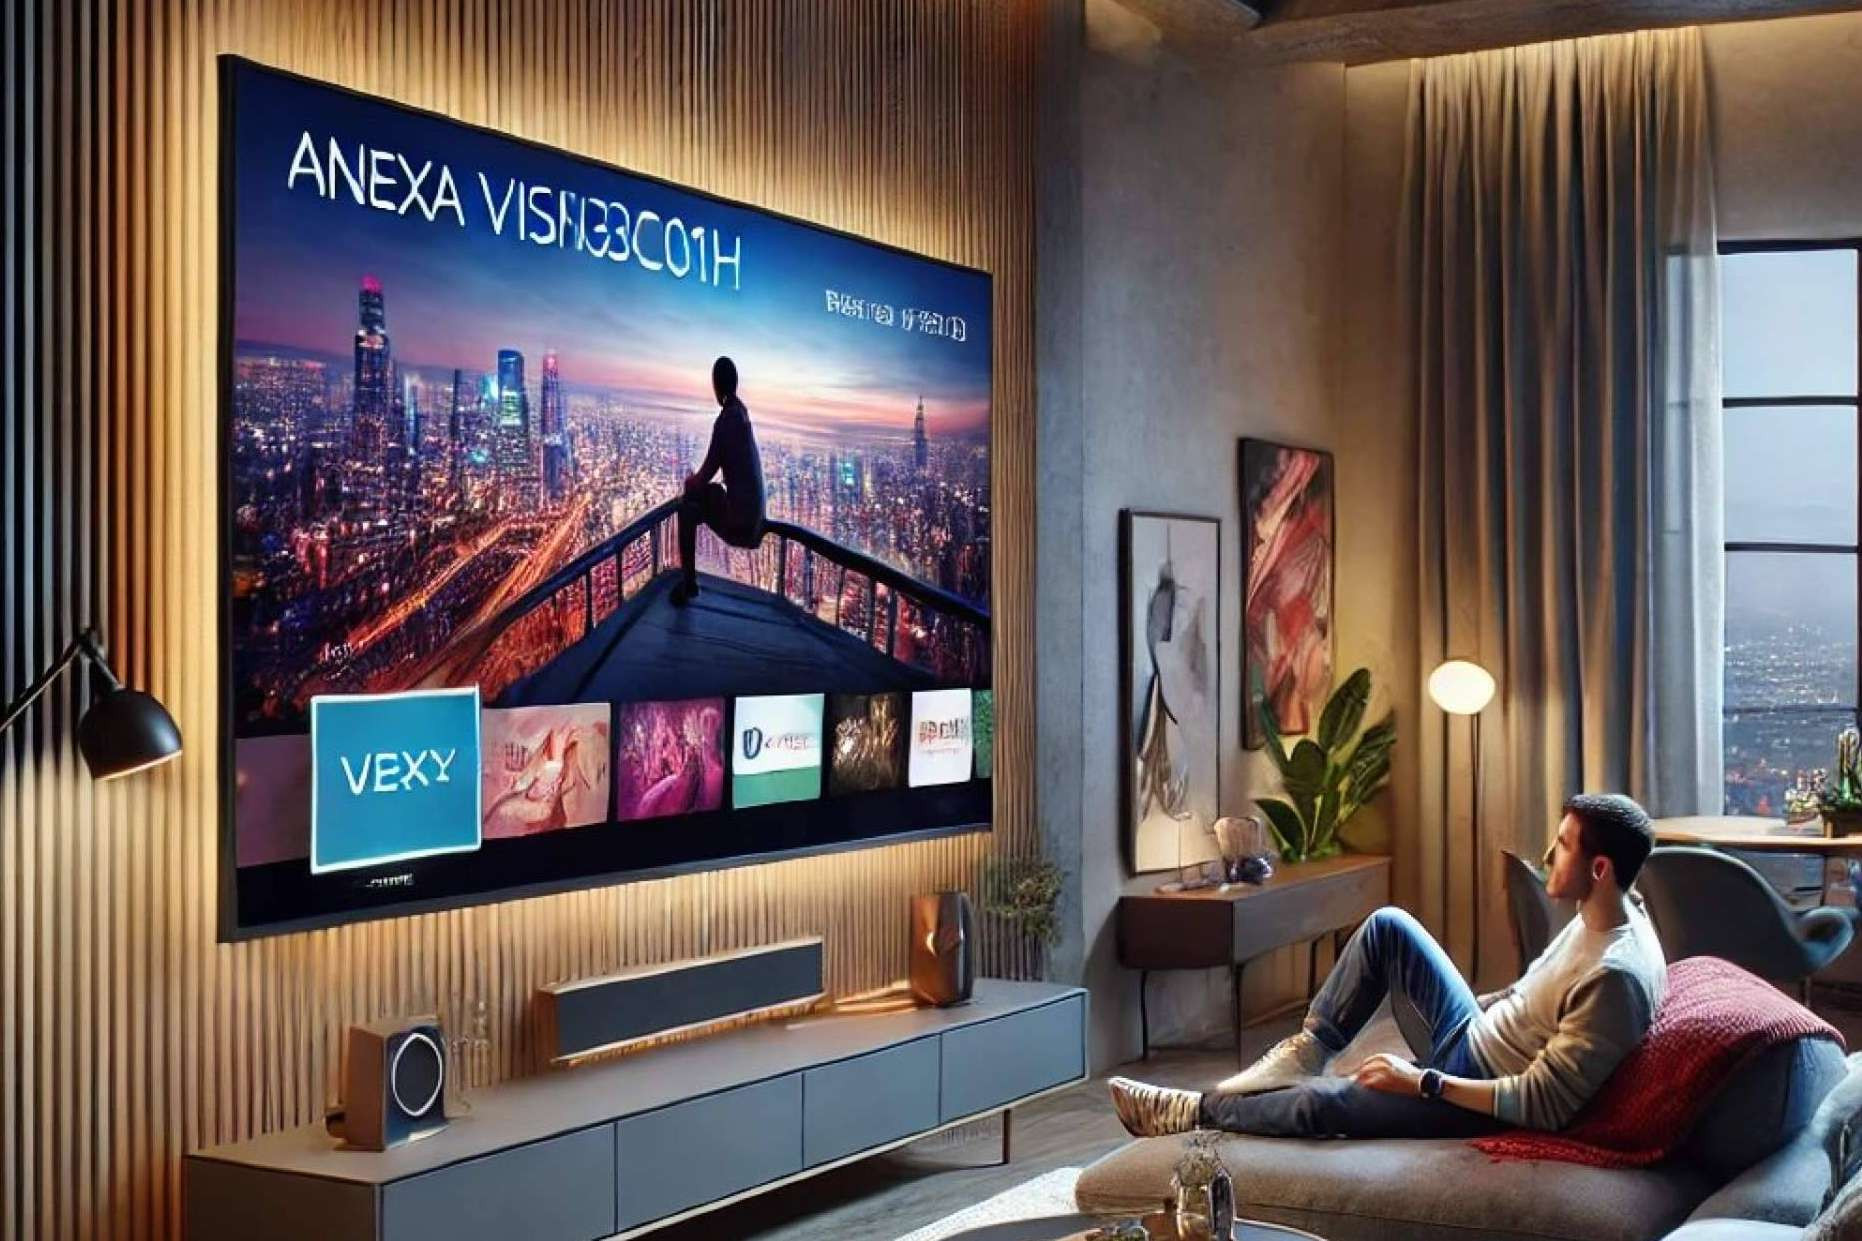  Entretenimiento audiovisual superiror con el VISION32C01H de ANEXA 